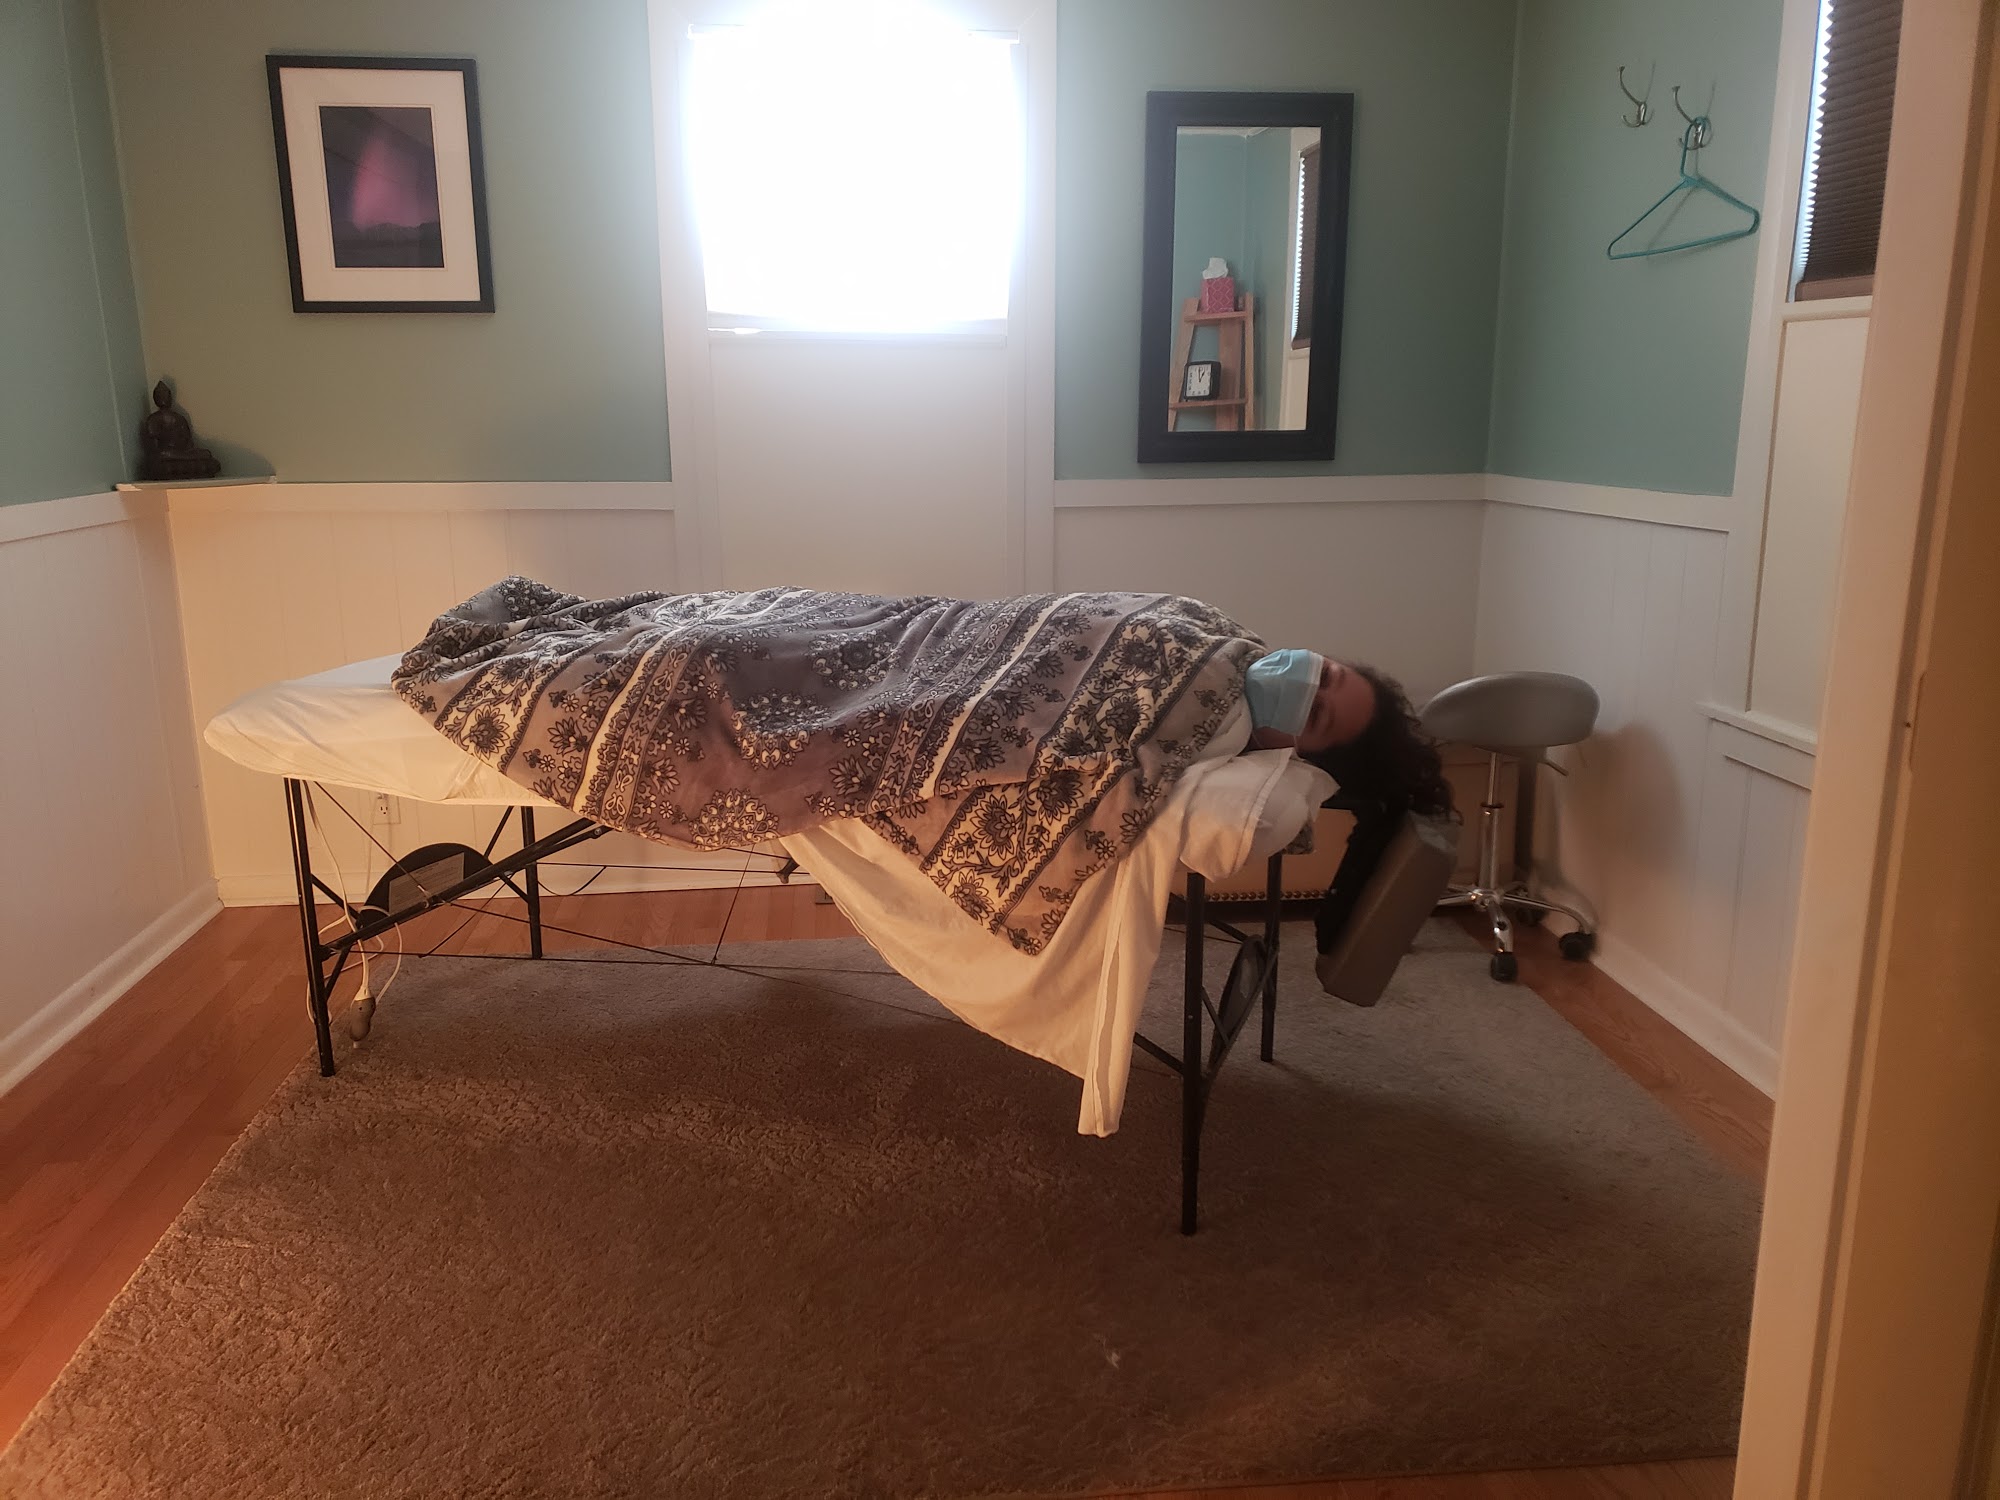 Moondance Massage Therapy